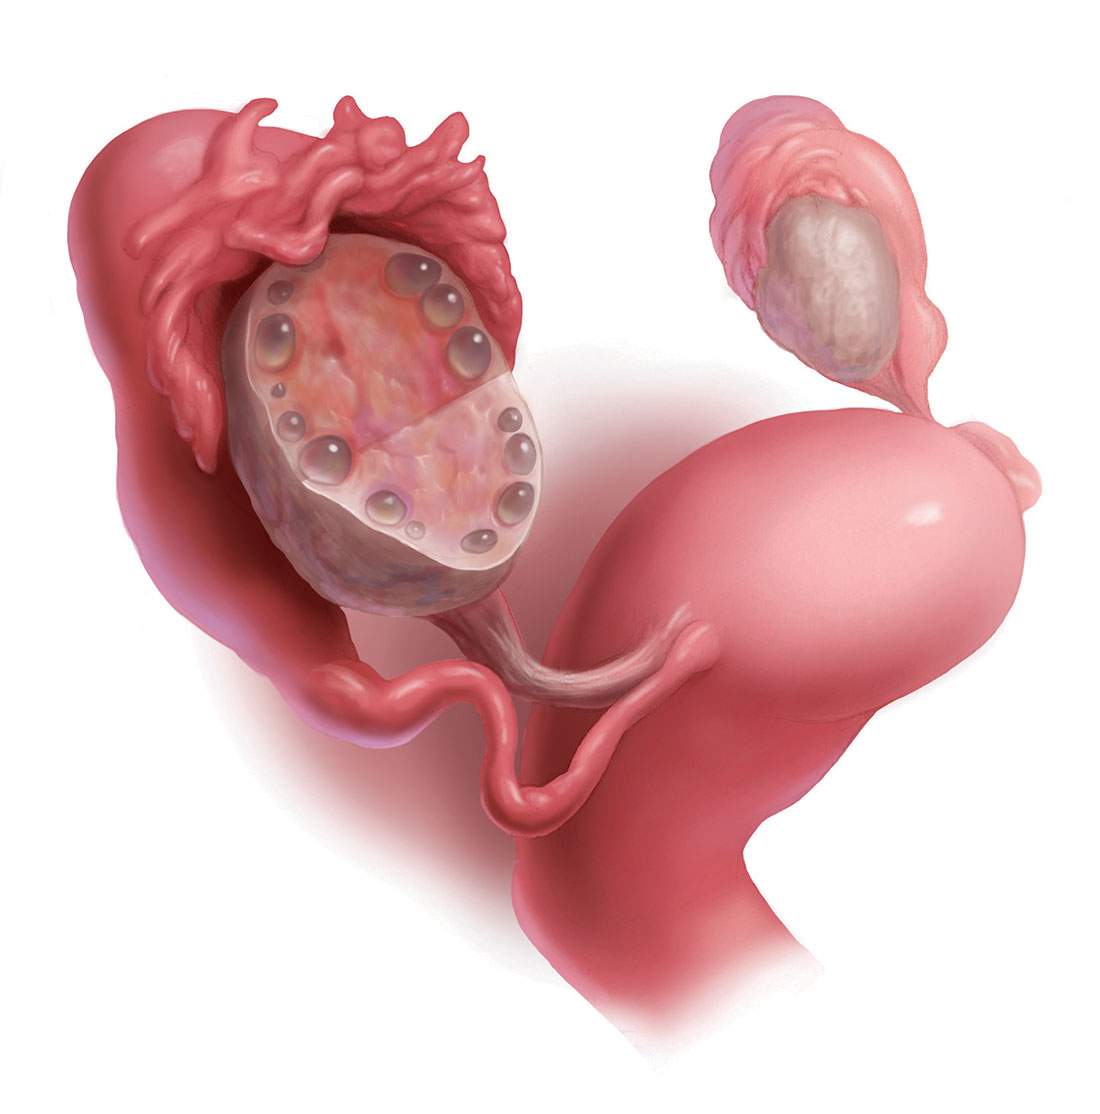 Sindromul ovarelor polichistice, dieta și fertilitatea ?